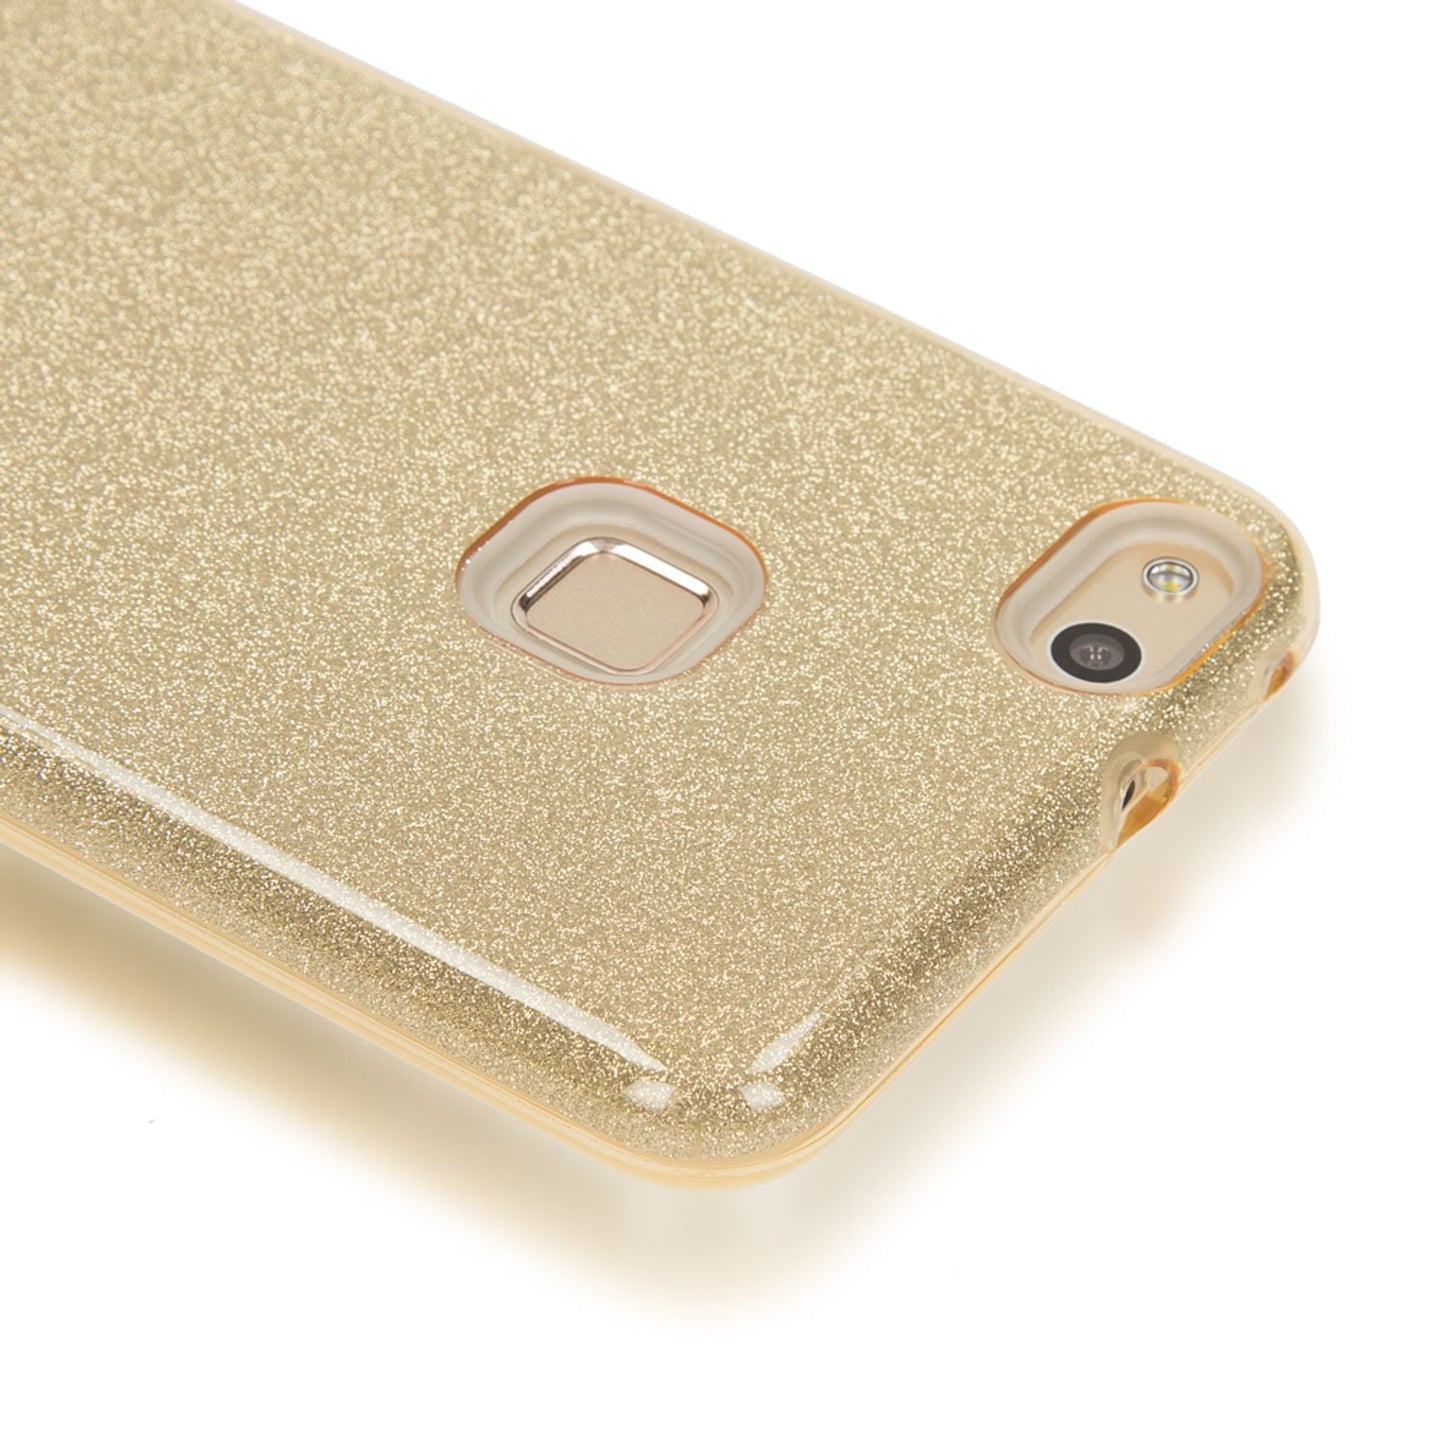 Huawei P10 Lite Handy Hülle von NALIA, Glitzer Silikon Cover Case Schutz Glitter